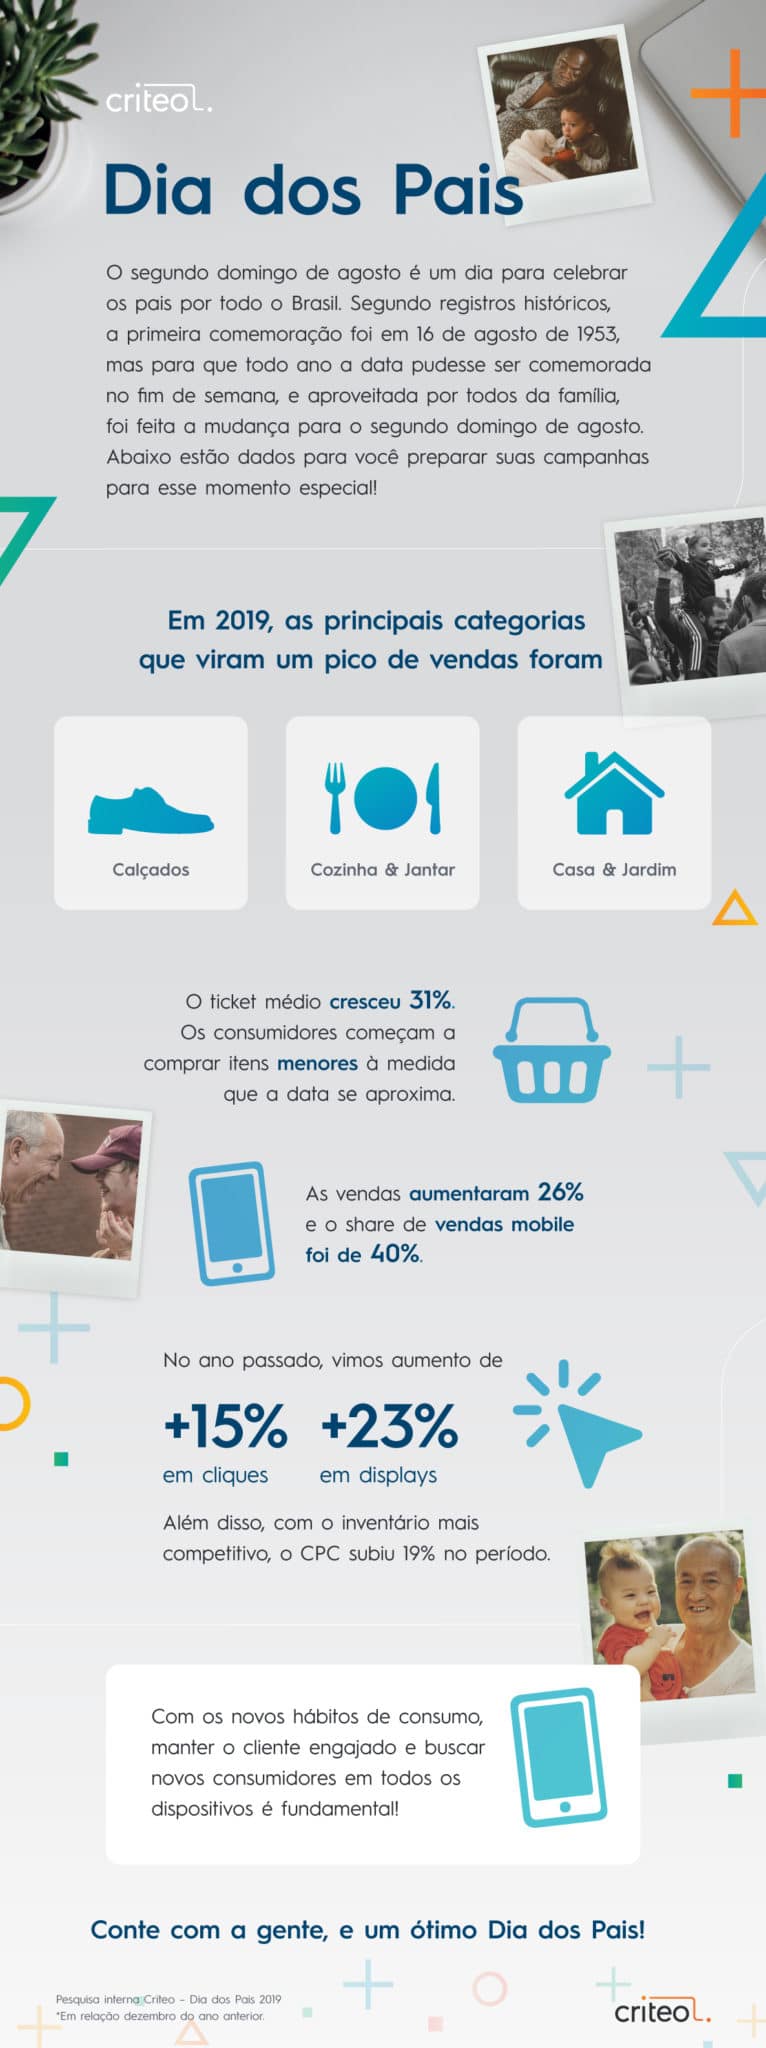 Como se planejar para a 3ª data mais importante do e-commerce no Brasil? Clique aqui e saiba as tendências e dicas valiosas que vão fazer o seu negócio online te deixar orgulhoso!